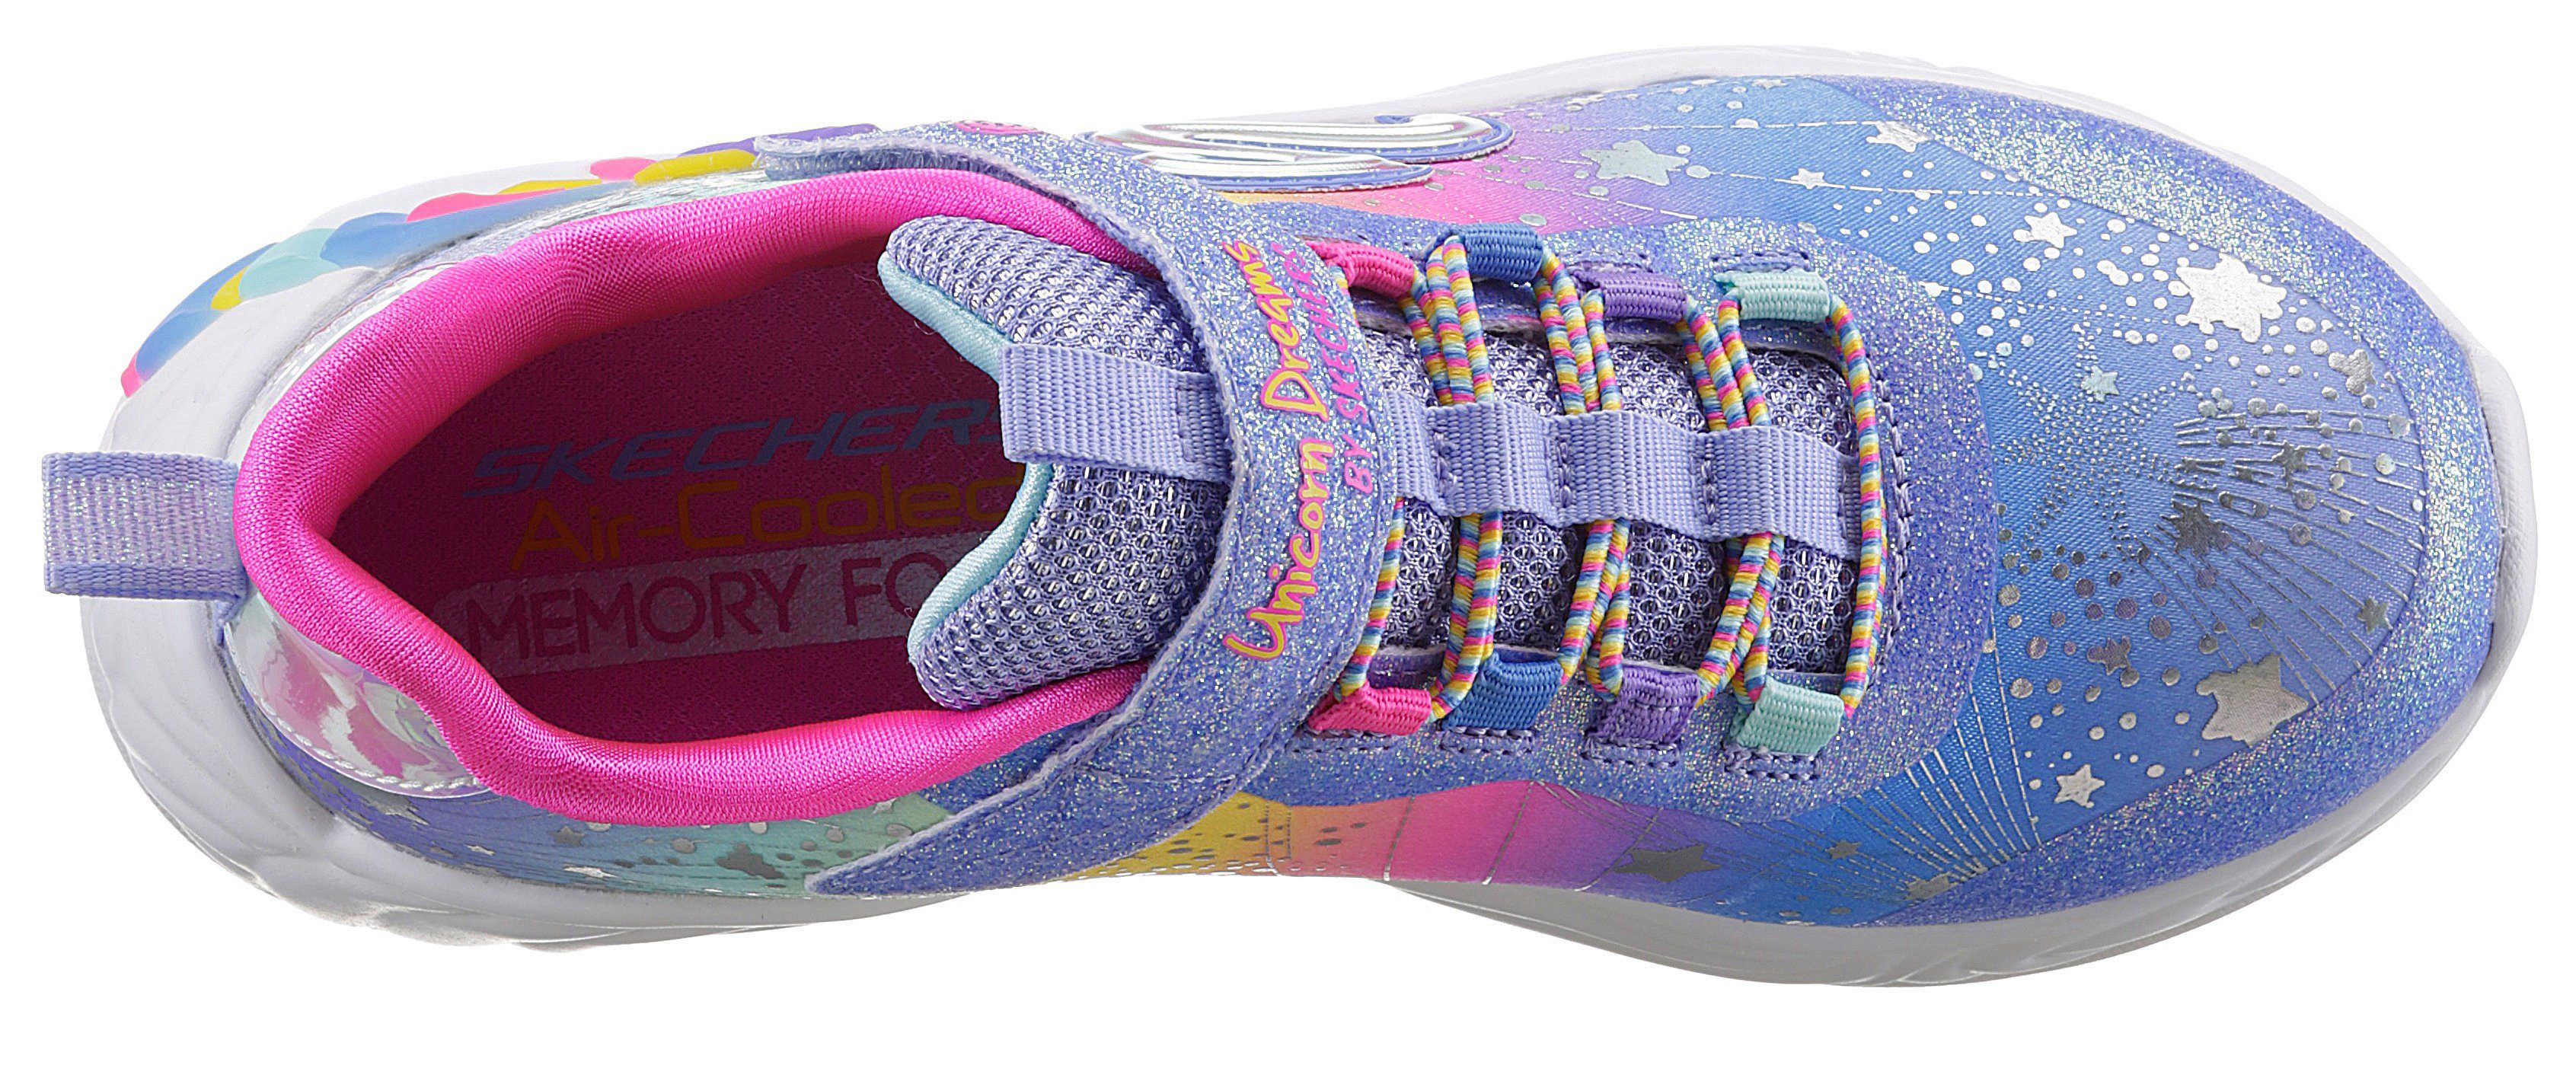 Skechers Kids UNICORN DREAMS- Sneaker mit blue/multi gepolsterter weich Innensohle